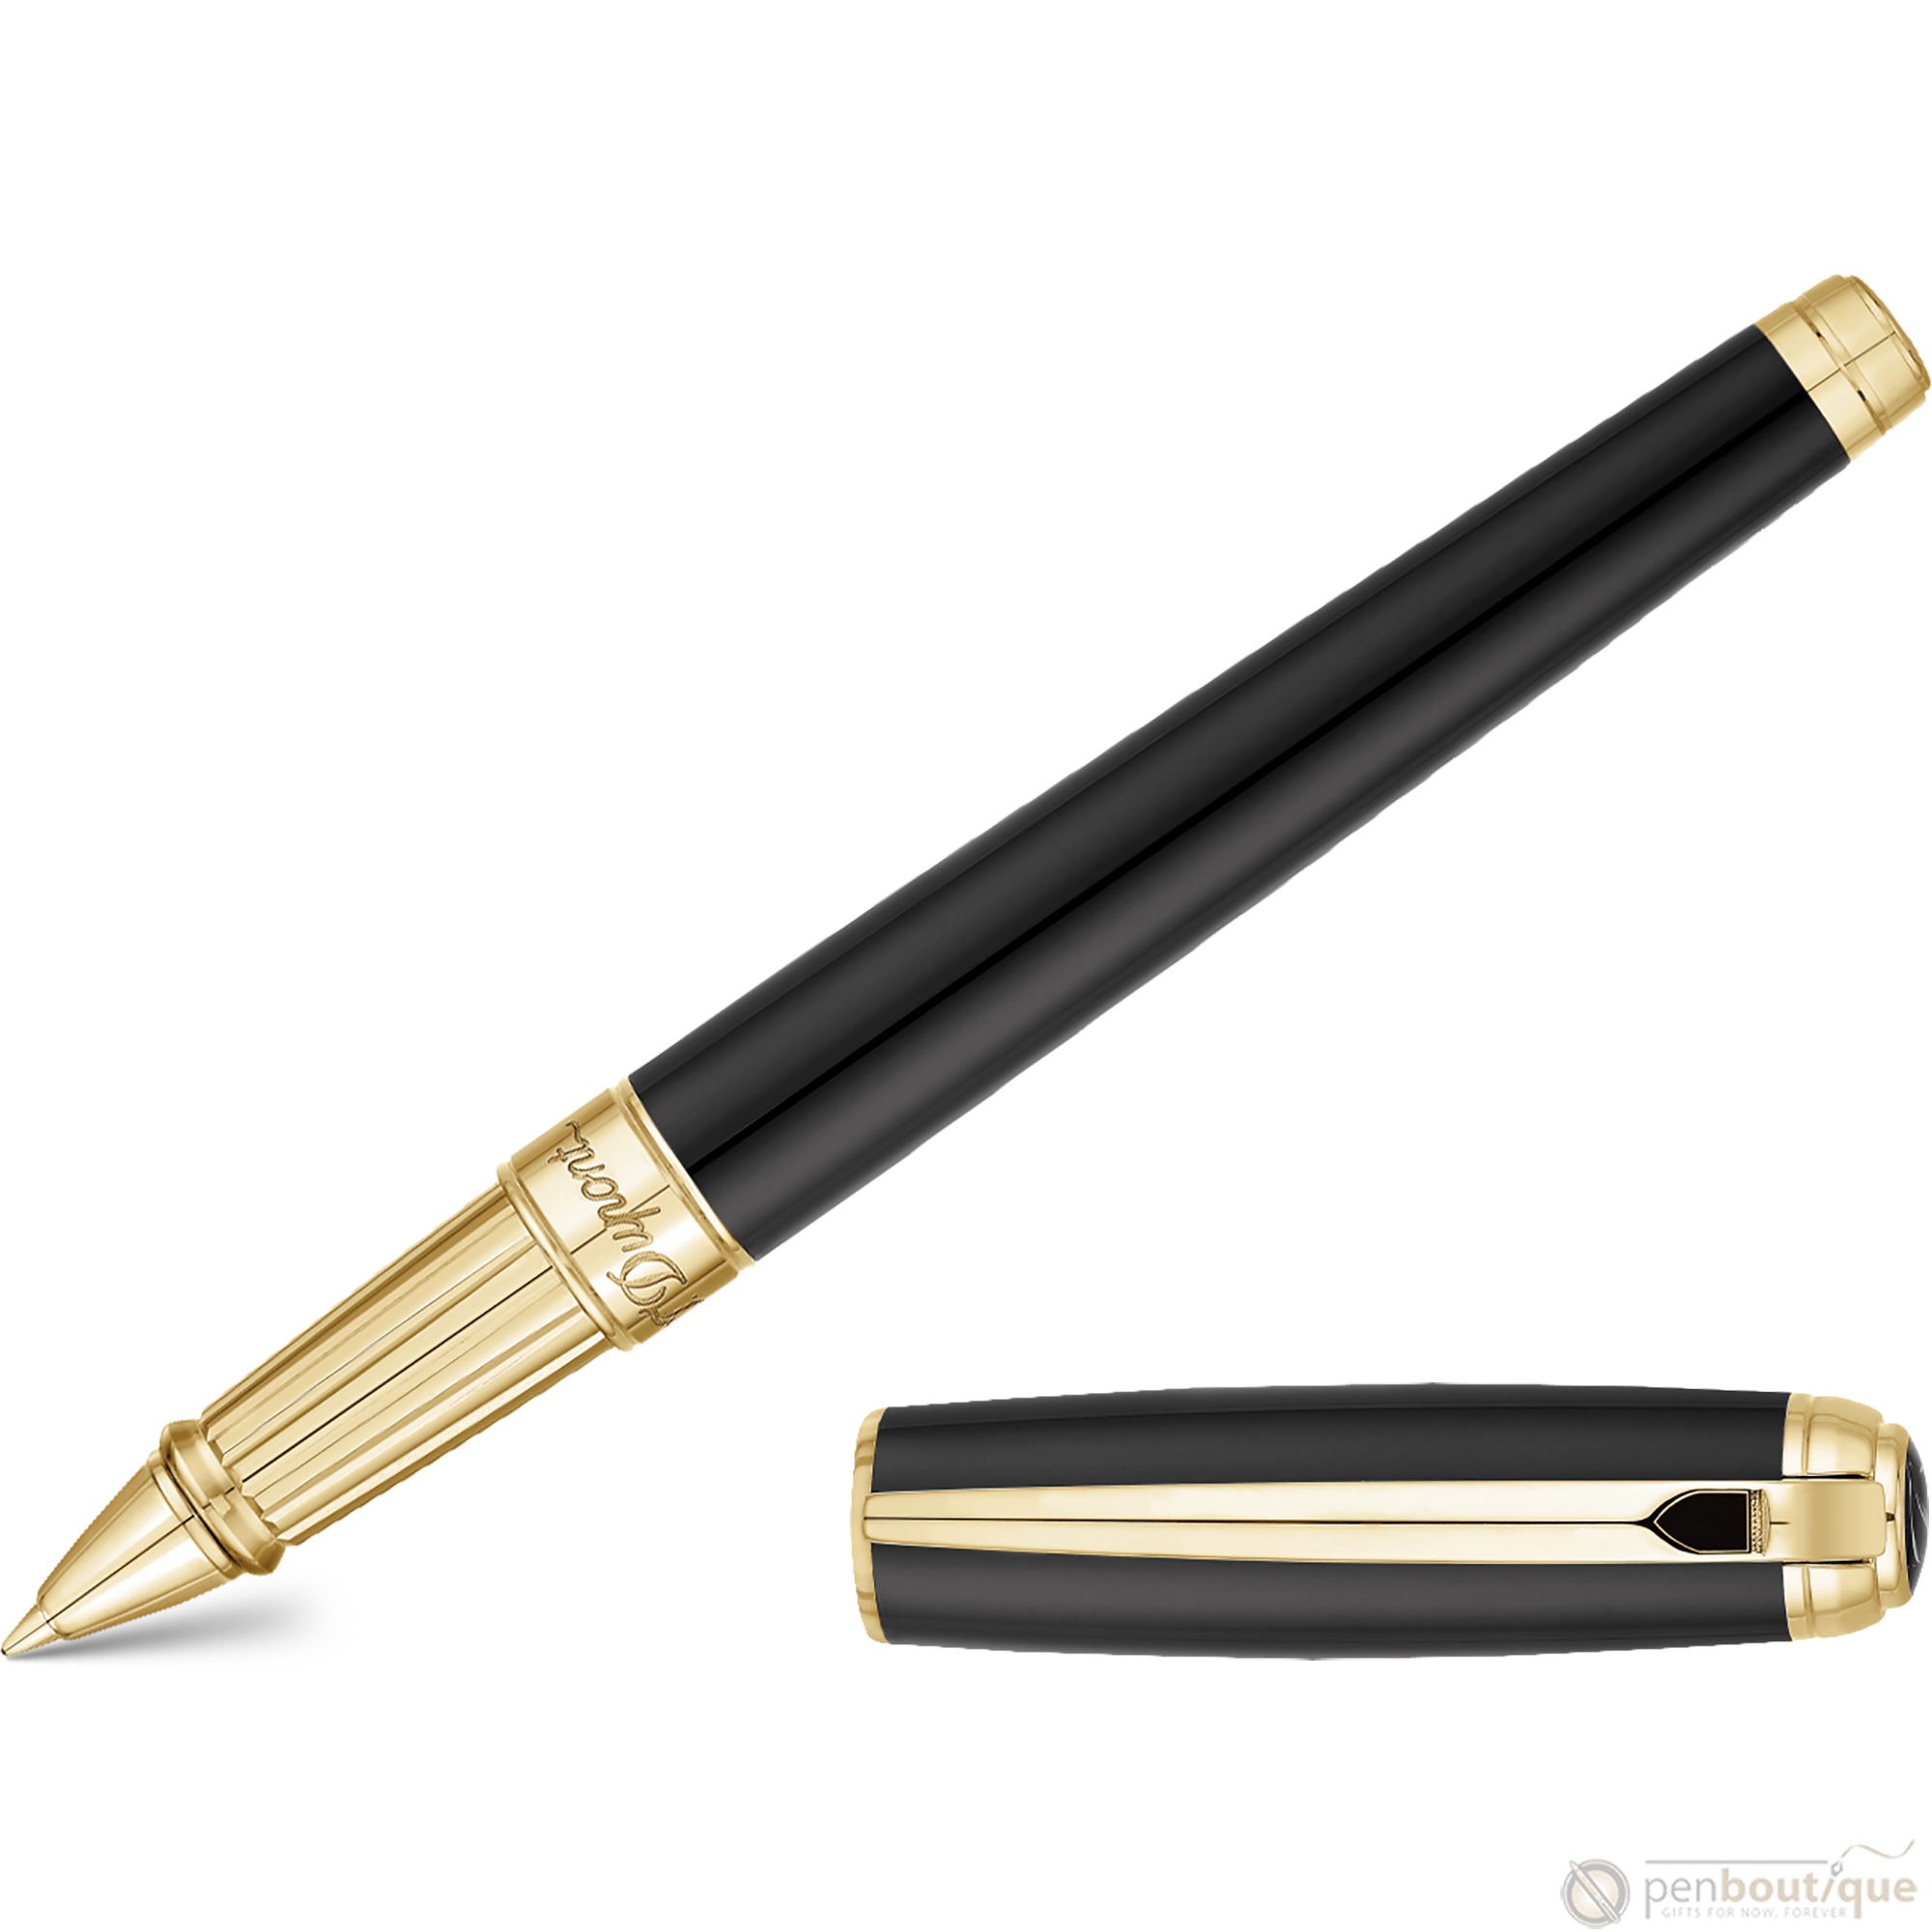 ST Dupont Line D Large Black with Gold Trim Rollerball Pen-Pen Boutique Ltd